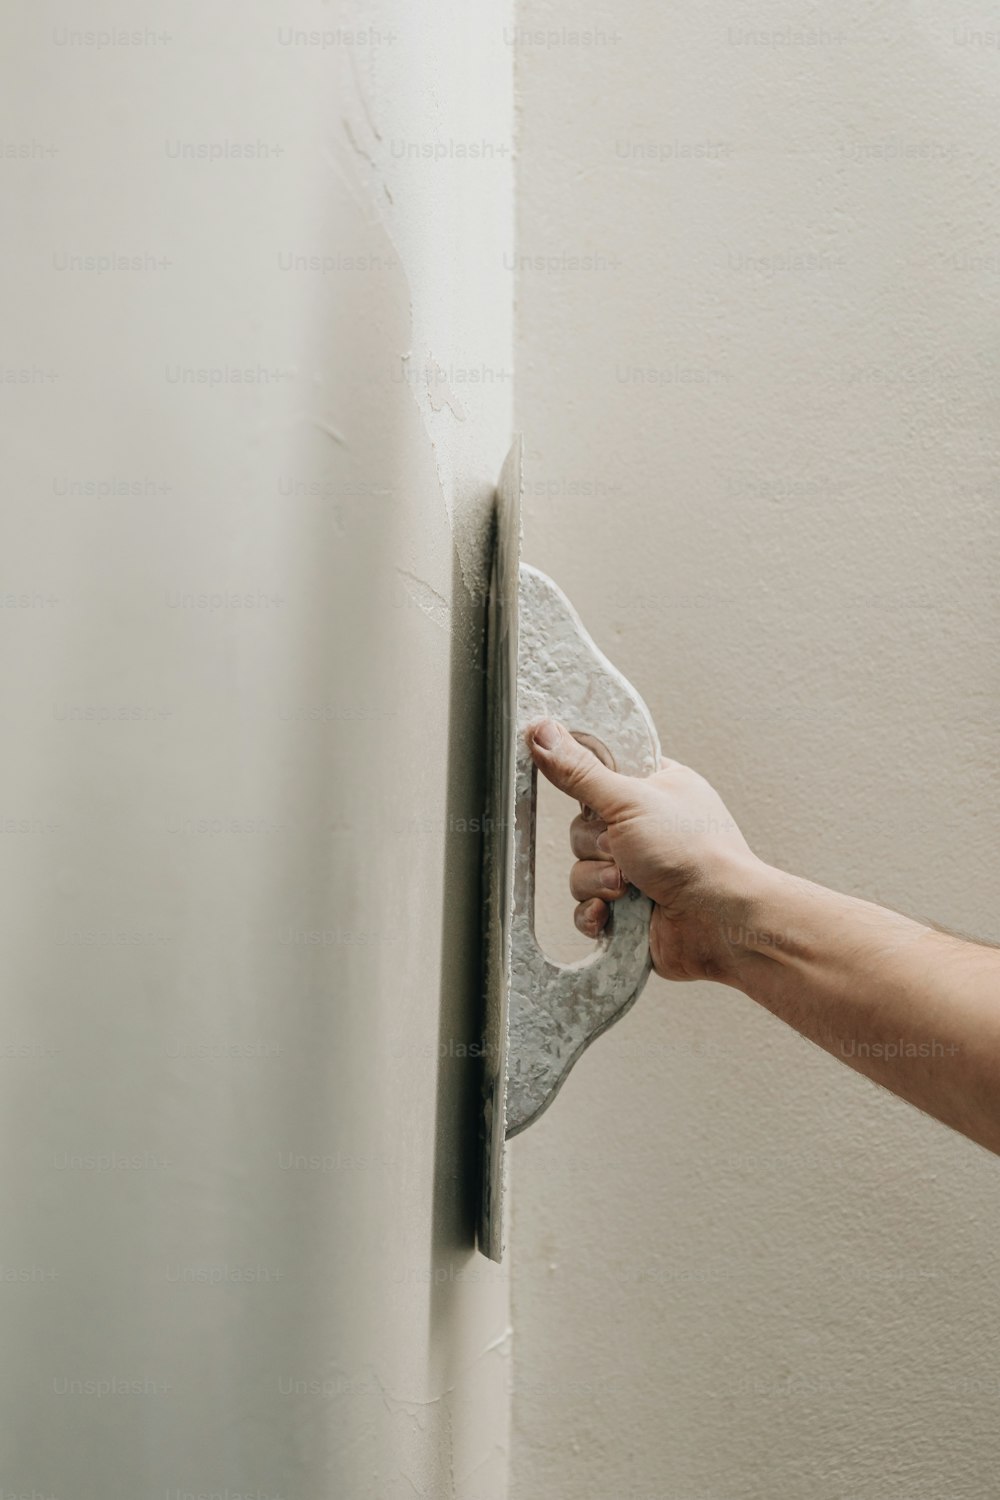 La mano de una persona sosteniendo una esponja en una pared